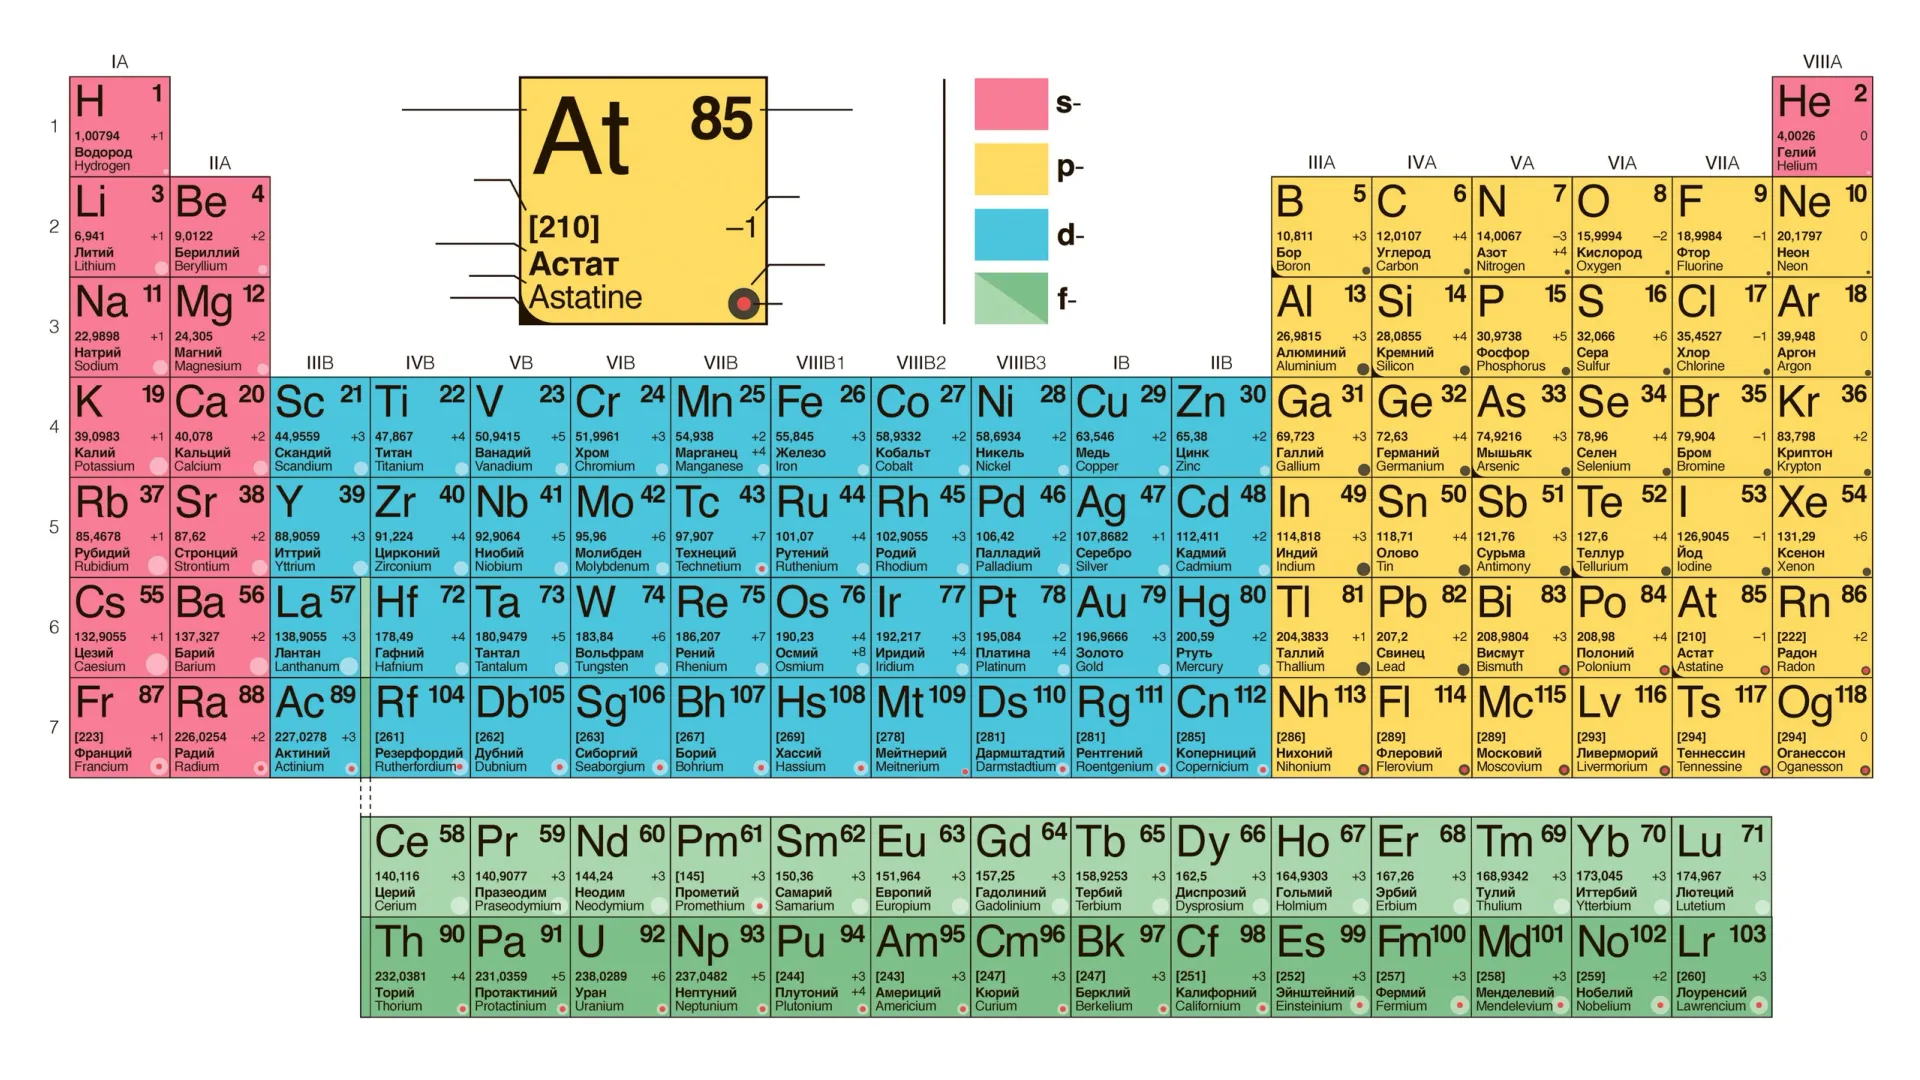 Периодическая система химических элементов Д. И. Менделеева. Фото: hlopex / Shutterstock / Fotodom